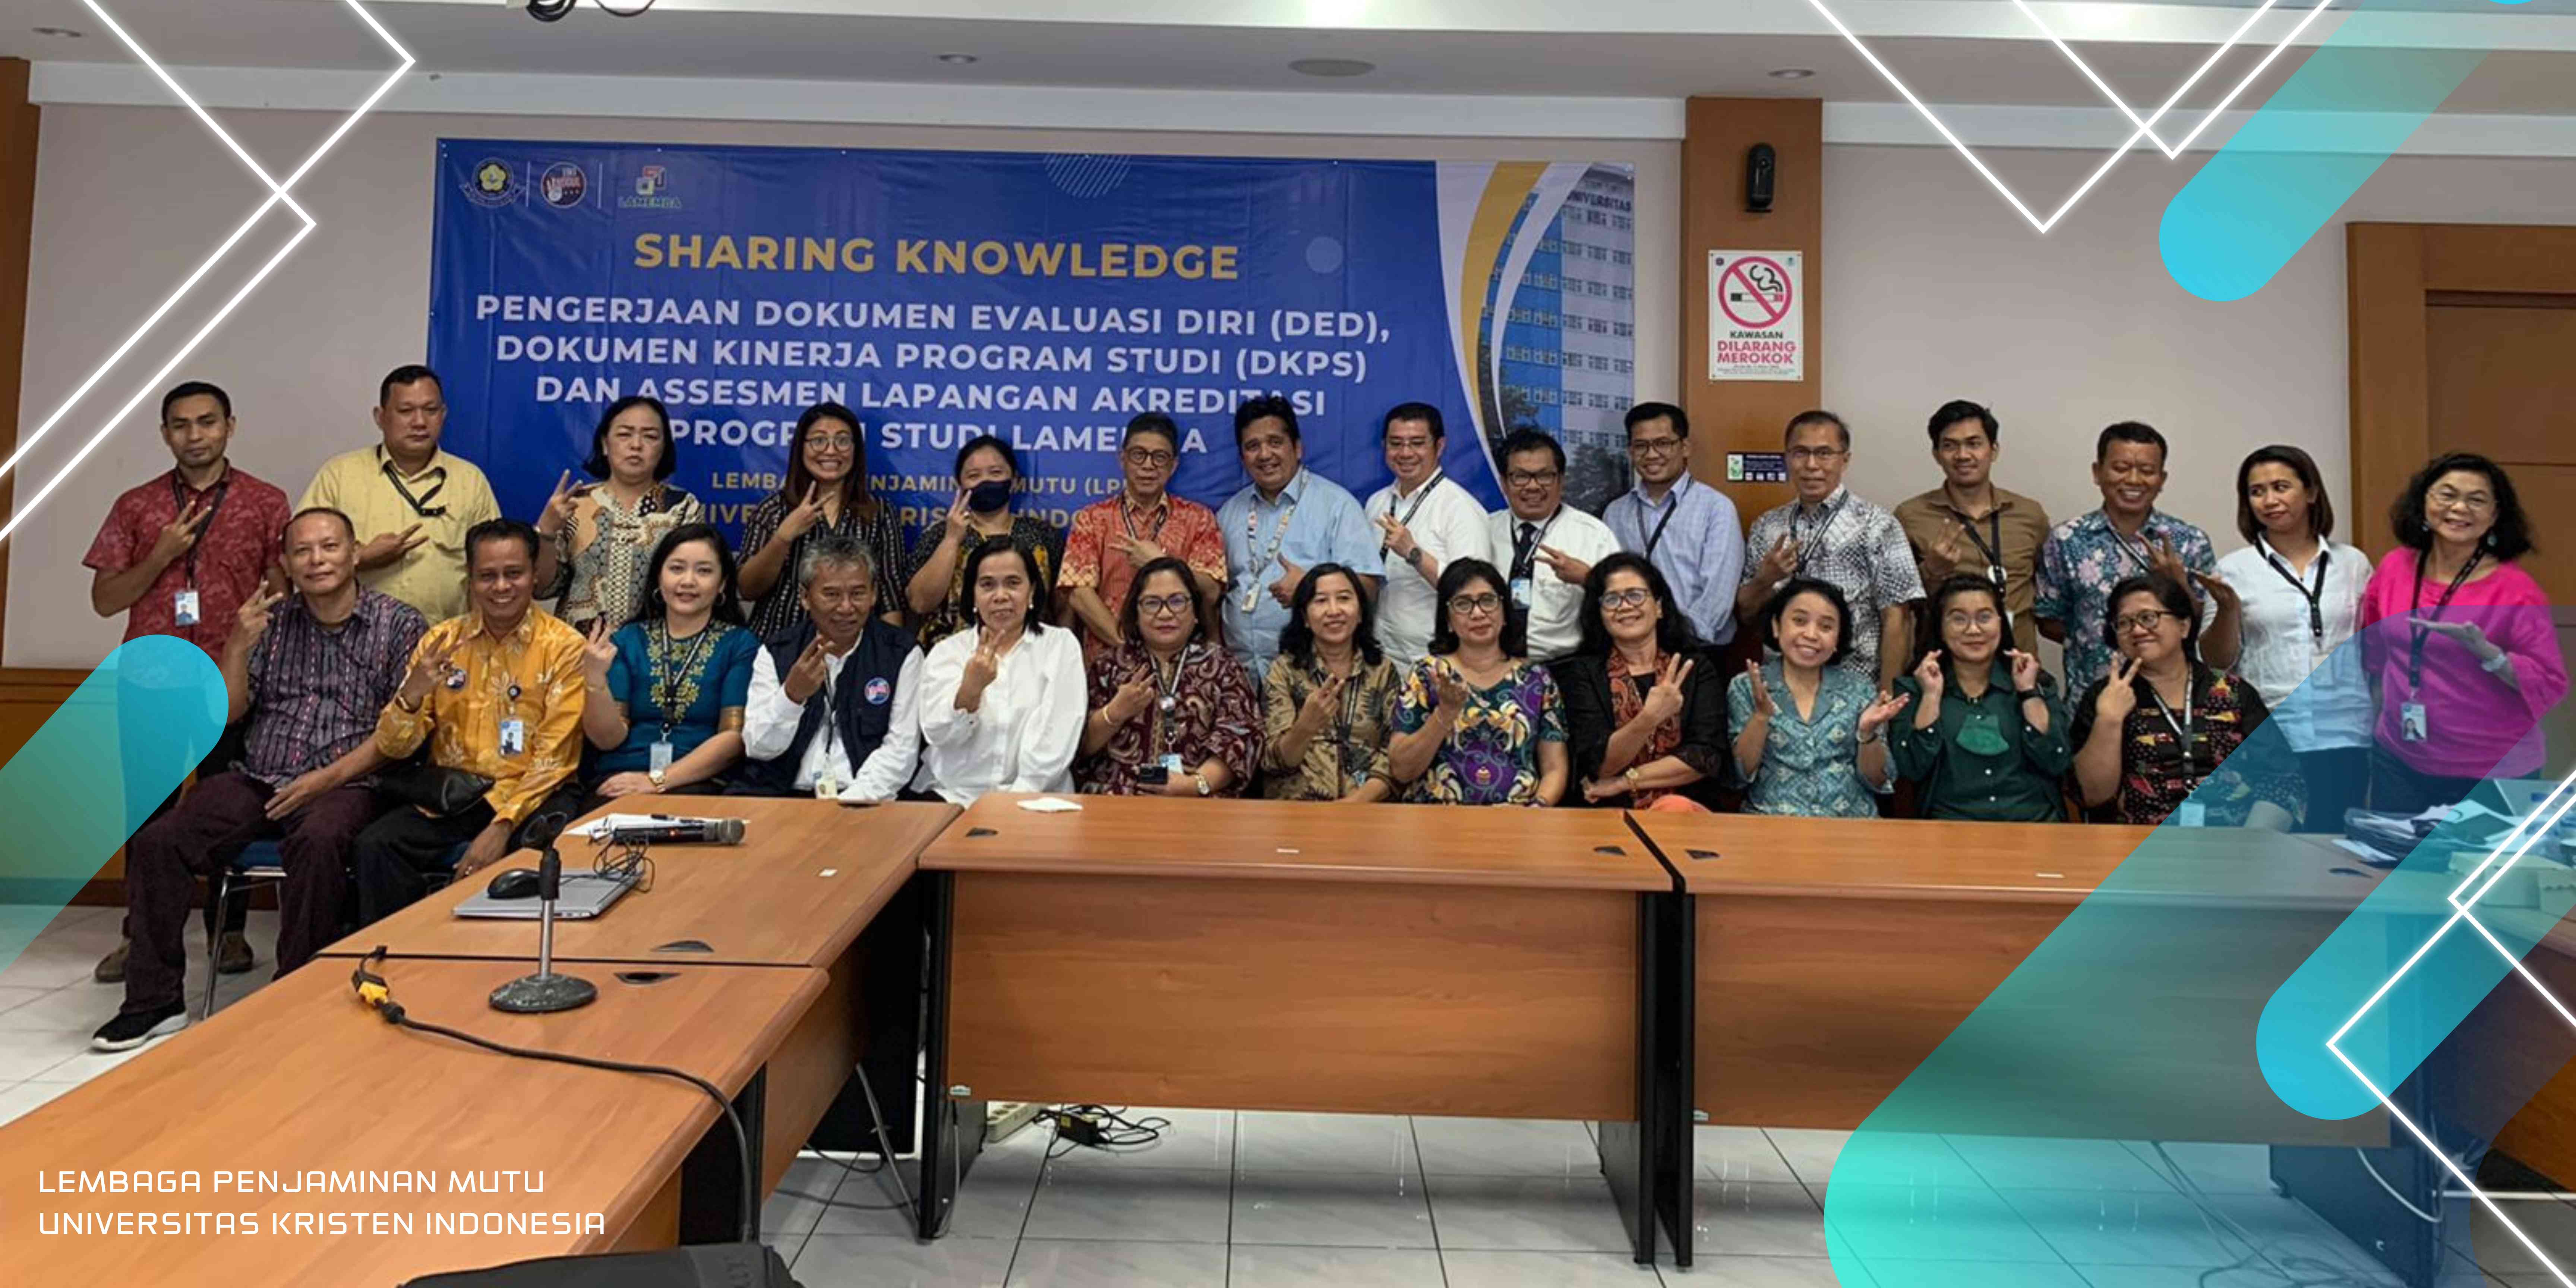 Sharing Knowledge Strategi Pengerjaan Dokumen Evaluasi Diri, Dokumen KINERJA Program Studi dan Assesmen Lapangan Akreditasi Program Studi LAMEMBA